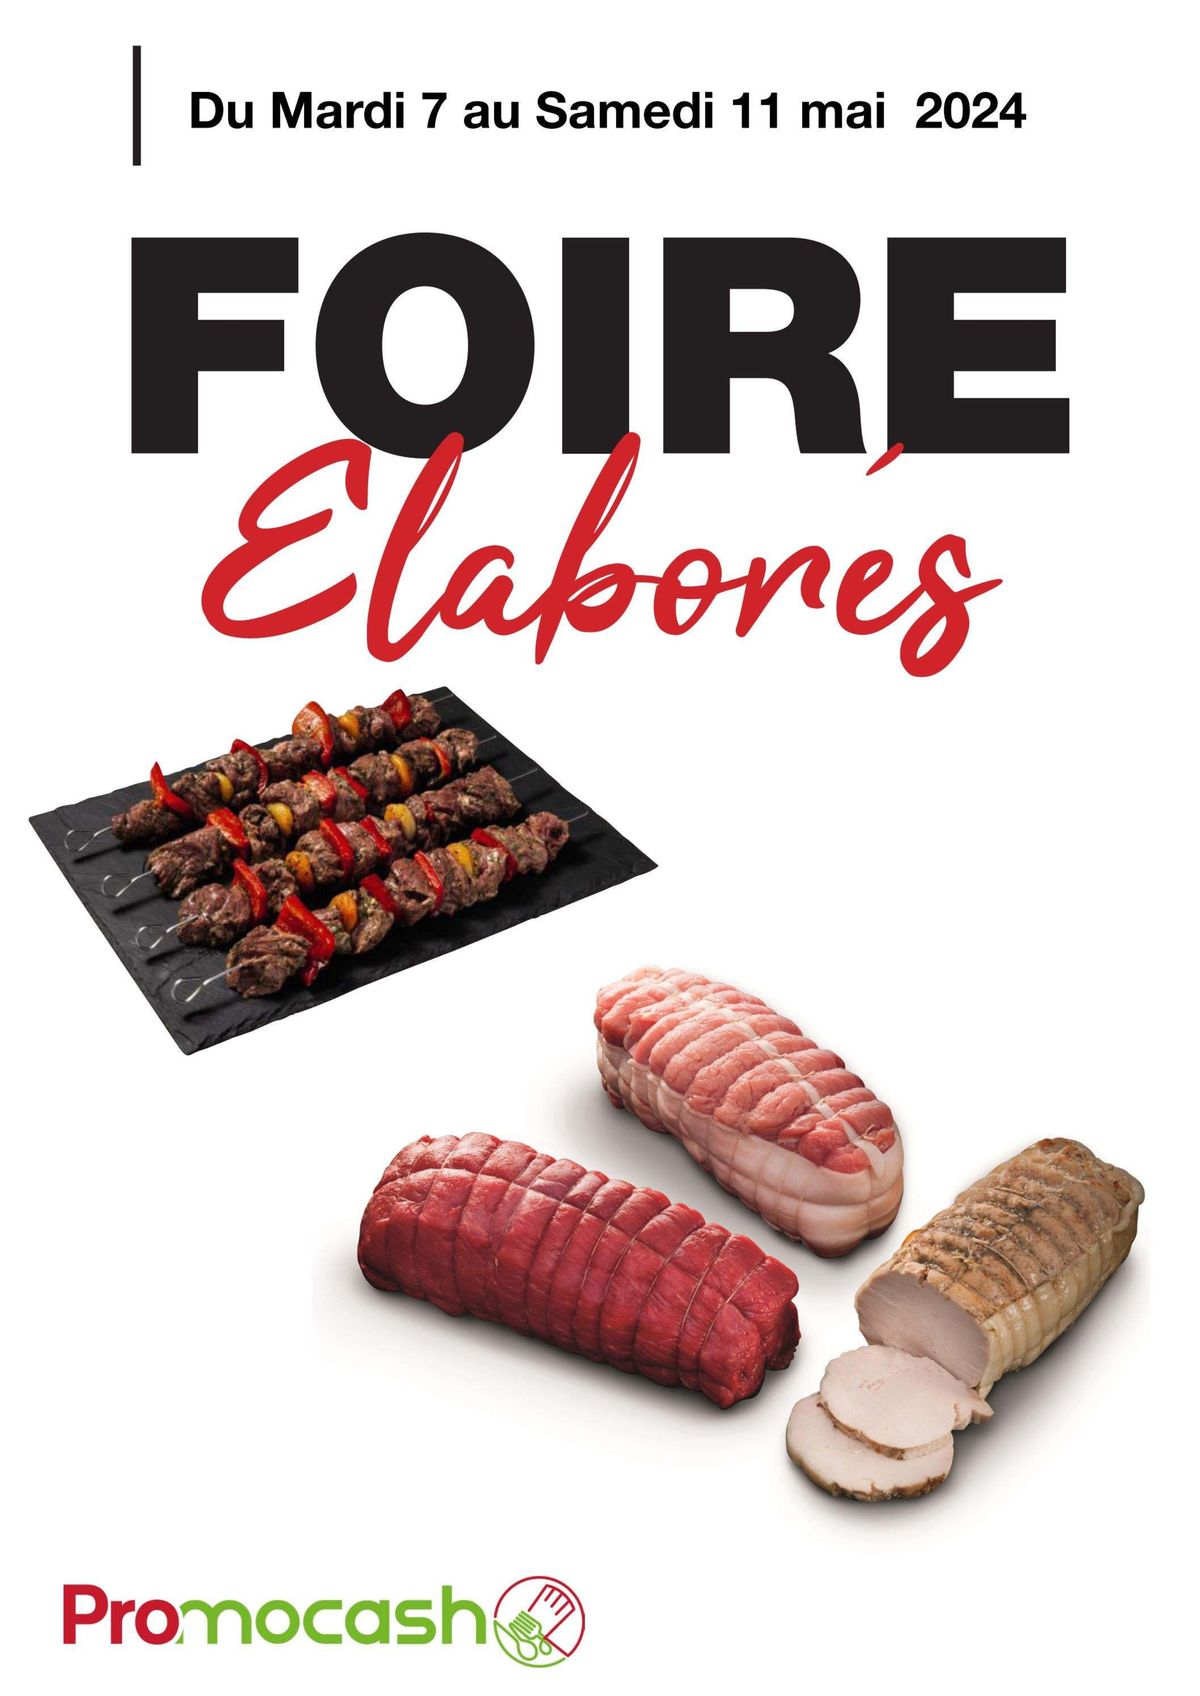 Catalogue Foire Elaborés, page 00001